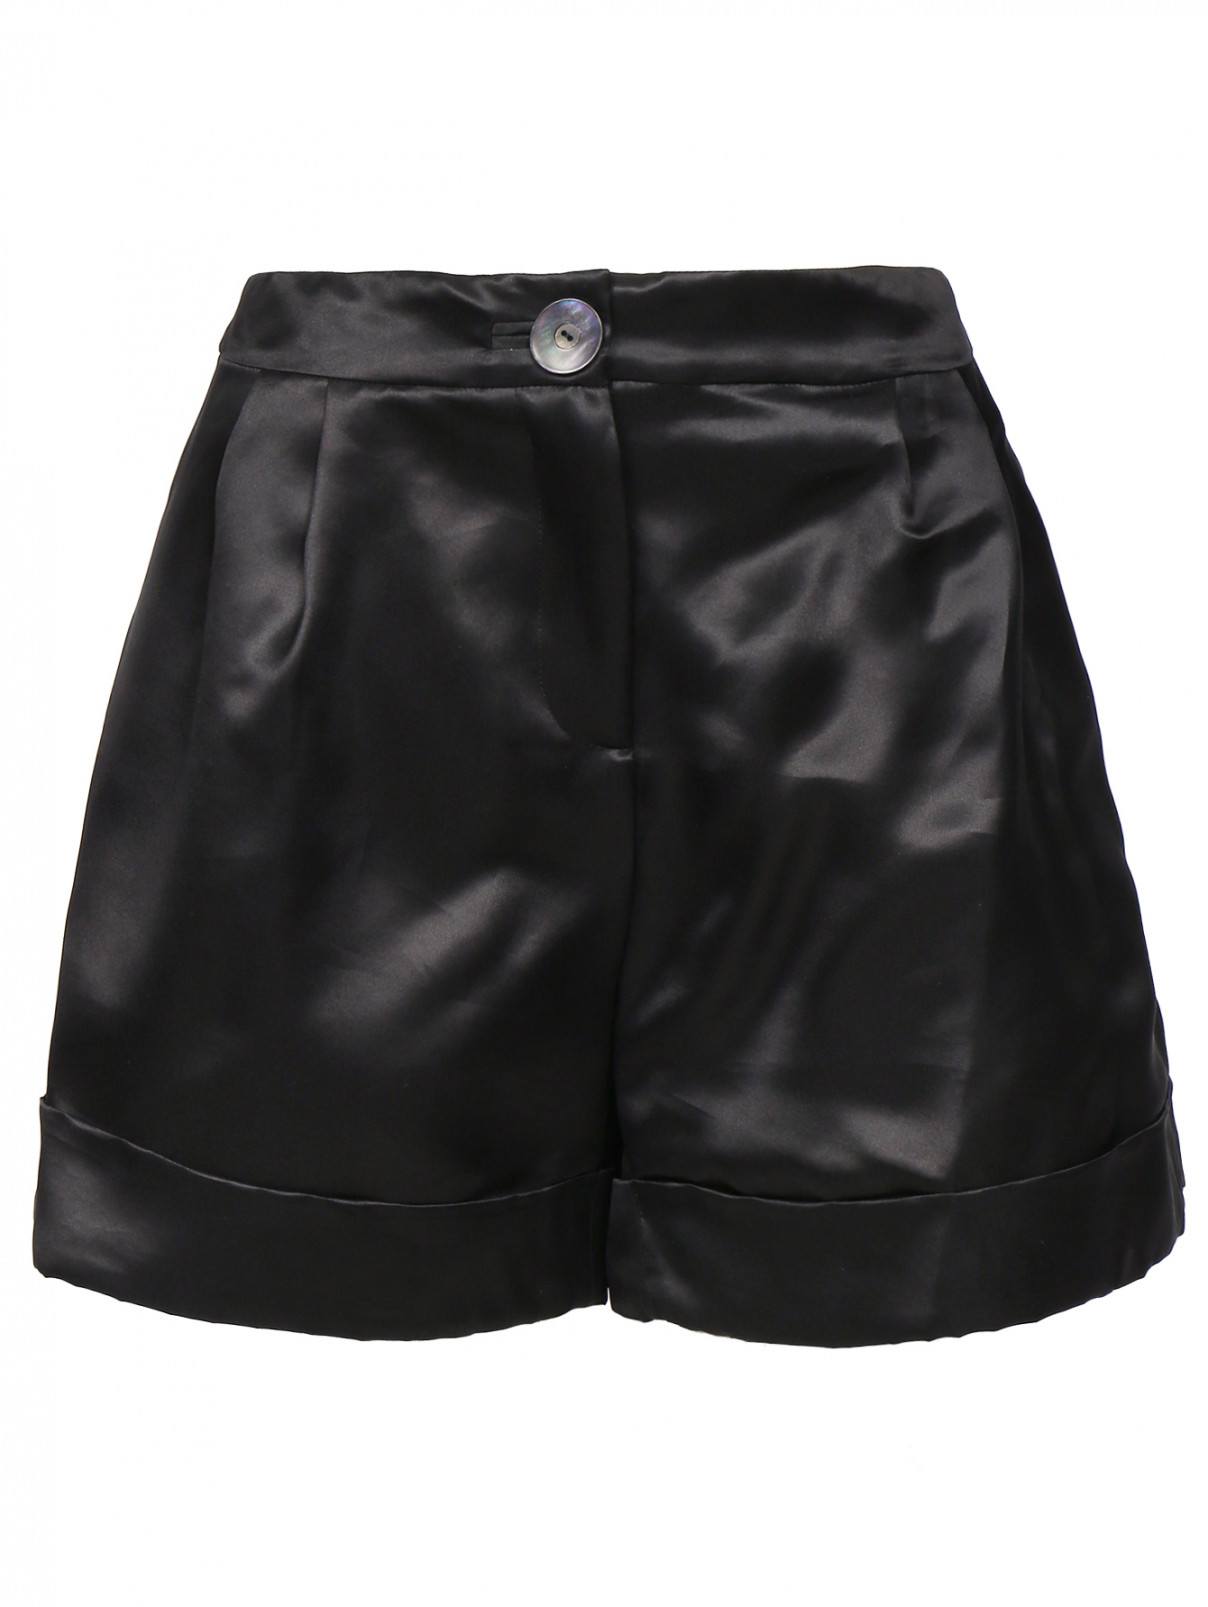 Свободные шорты из шелка Antonio Marras  –  Общий вид  – Цвет:  Черный